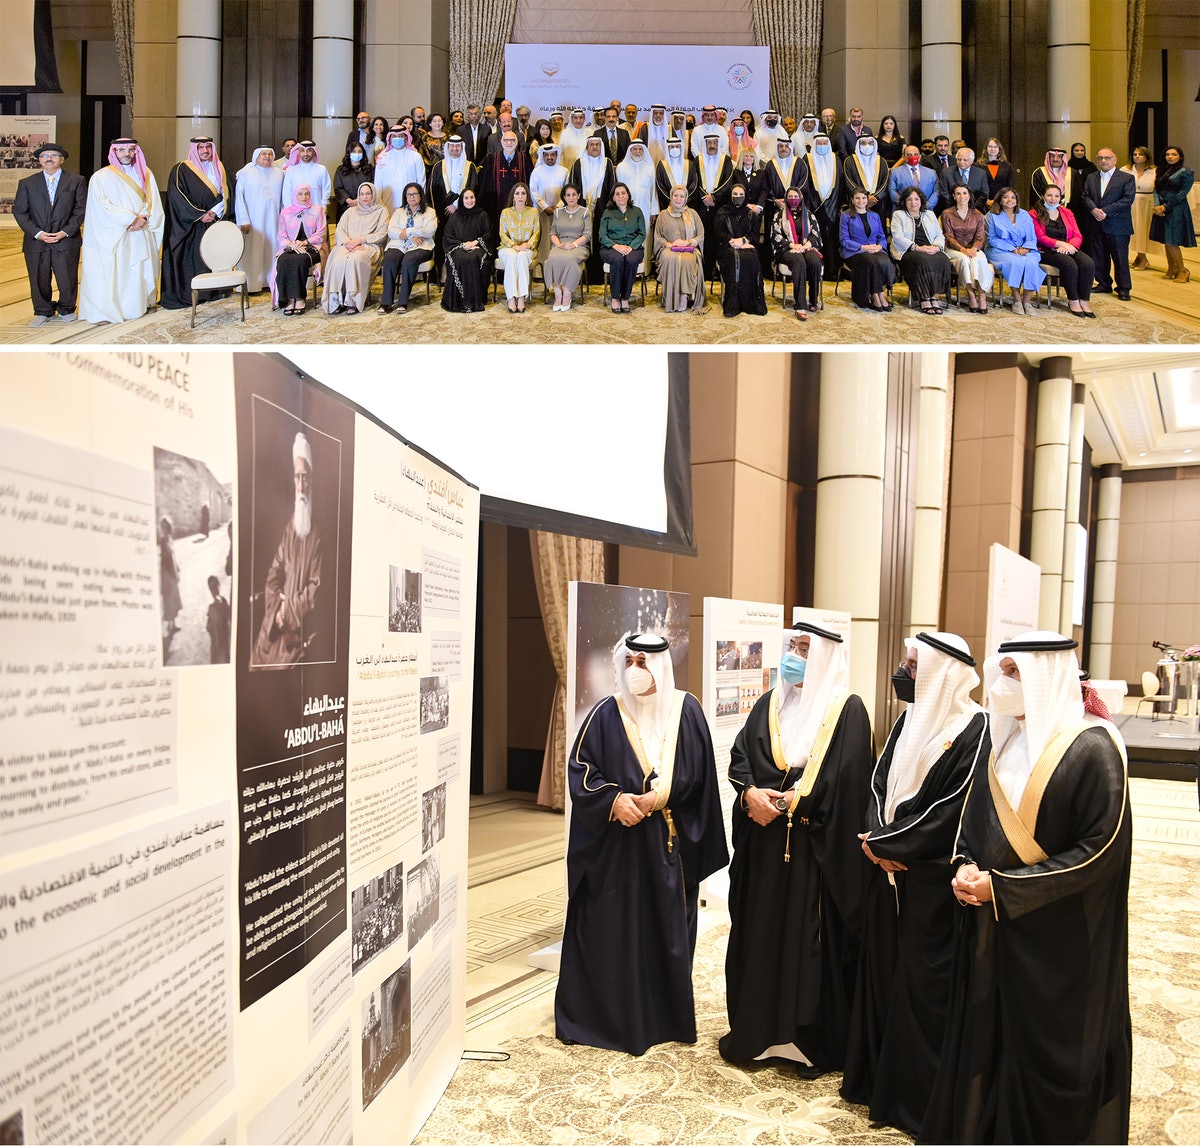 Un rassemblement national sur la coexistence, organisé par les bahá’ís de Bahreïn, a réuni le cheikh Khalid bin Khalifa Al Khalifa, représentant le roi de Bahreïn, et d’autres personnalités pour réfléchir à l’appel à la paix lancé par ‘Abdu’l-Bahá.